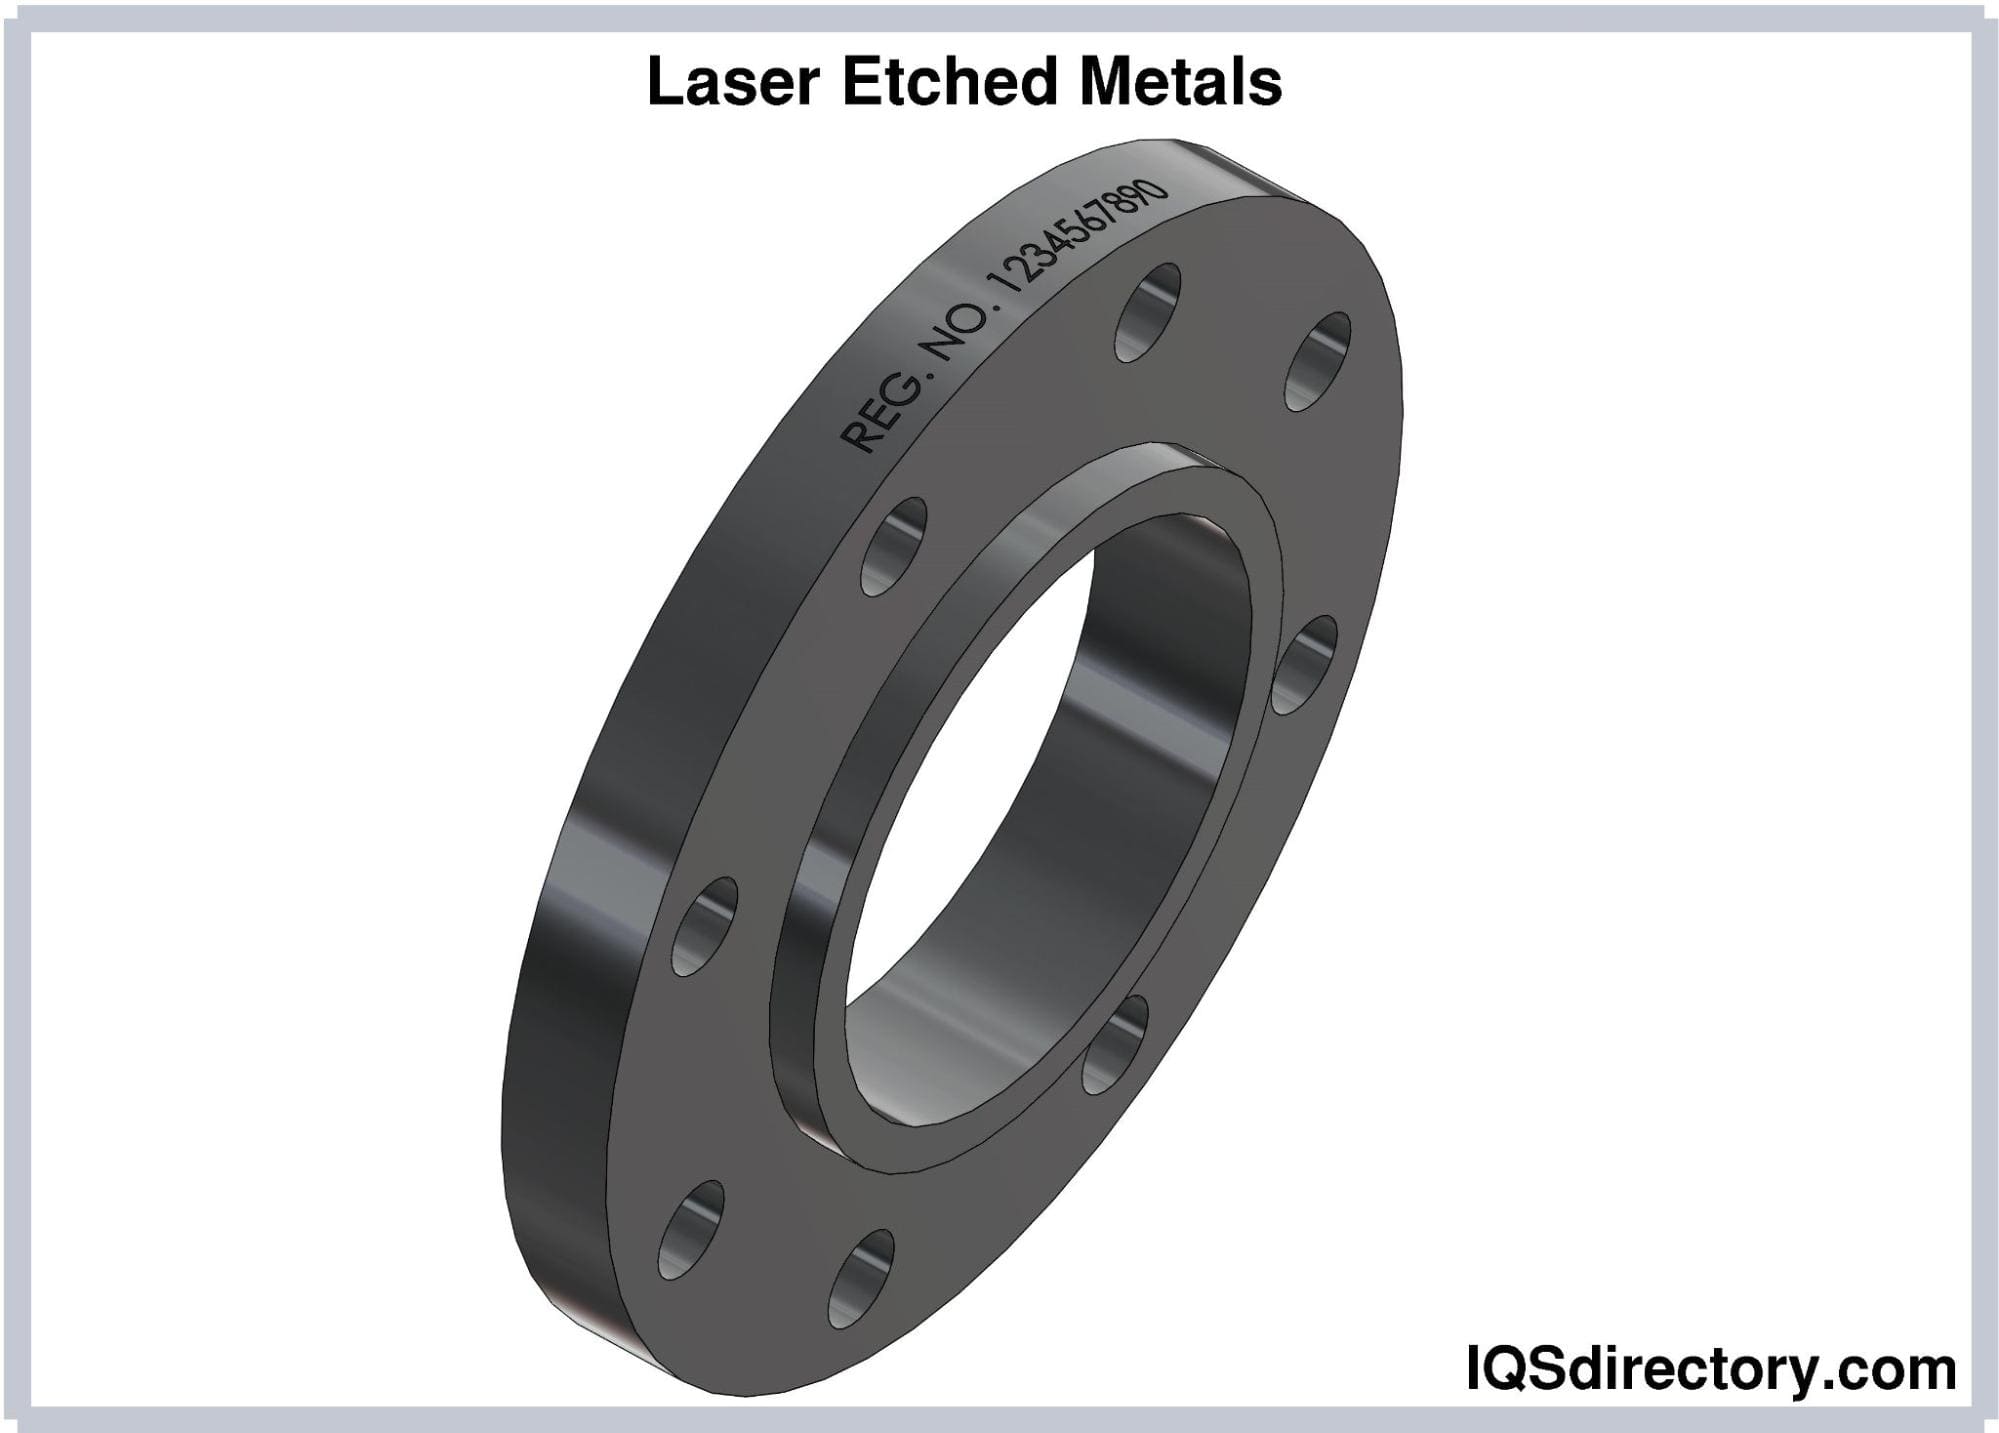 Laser Etched Metals